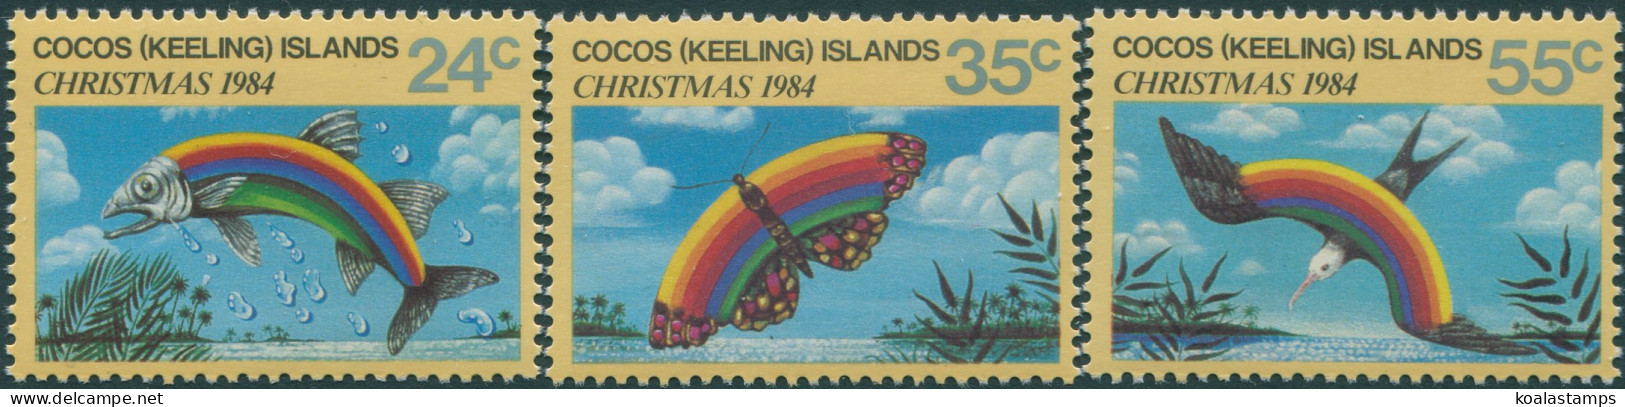 Cocos Islands 1984 SG122-124 Christmas Set MNH - Cocoseilanden